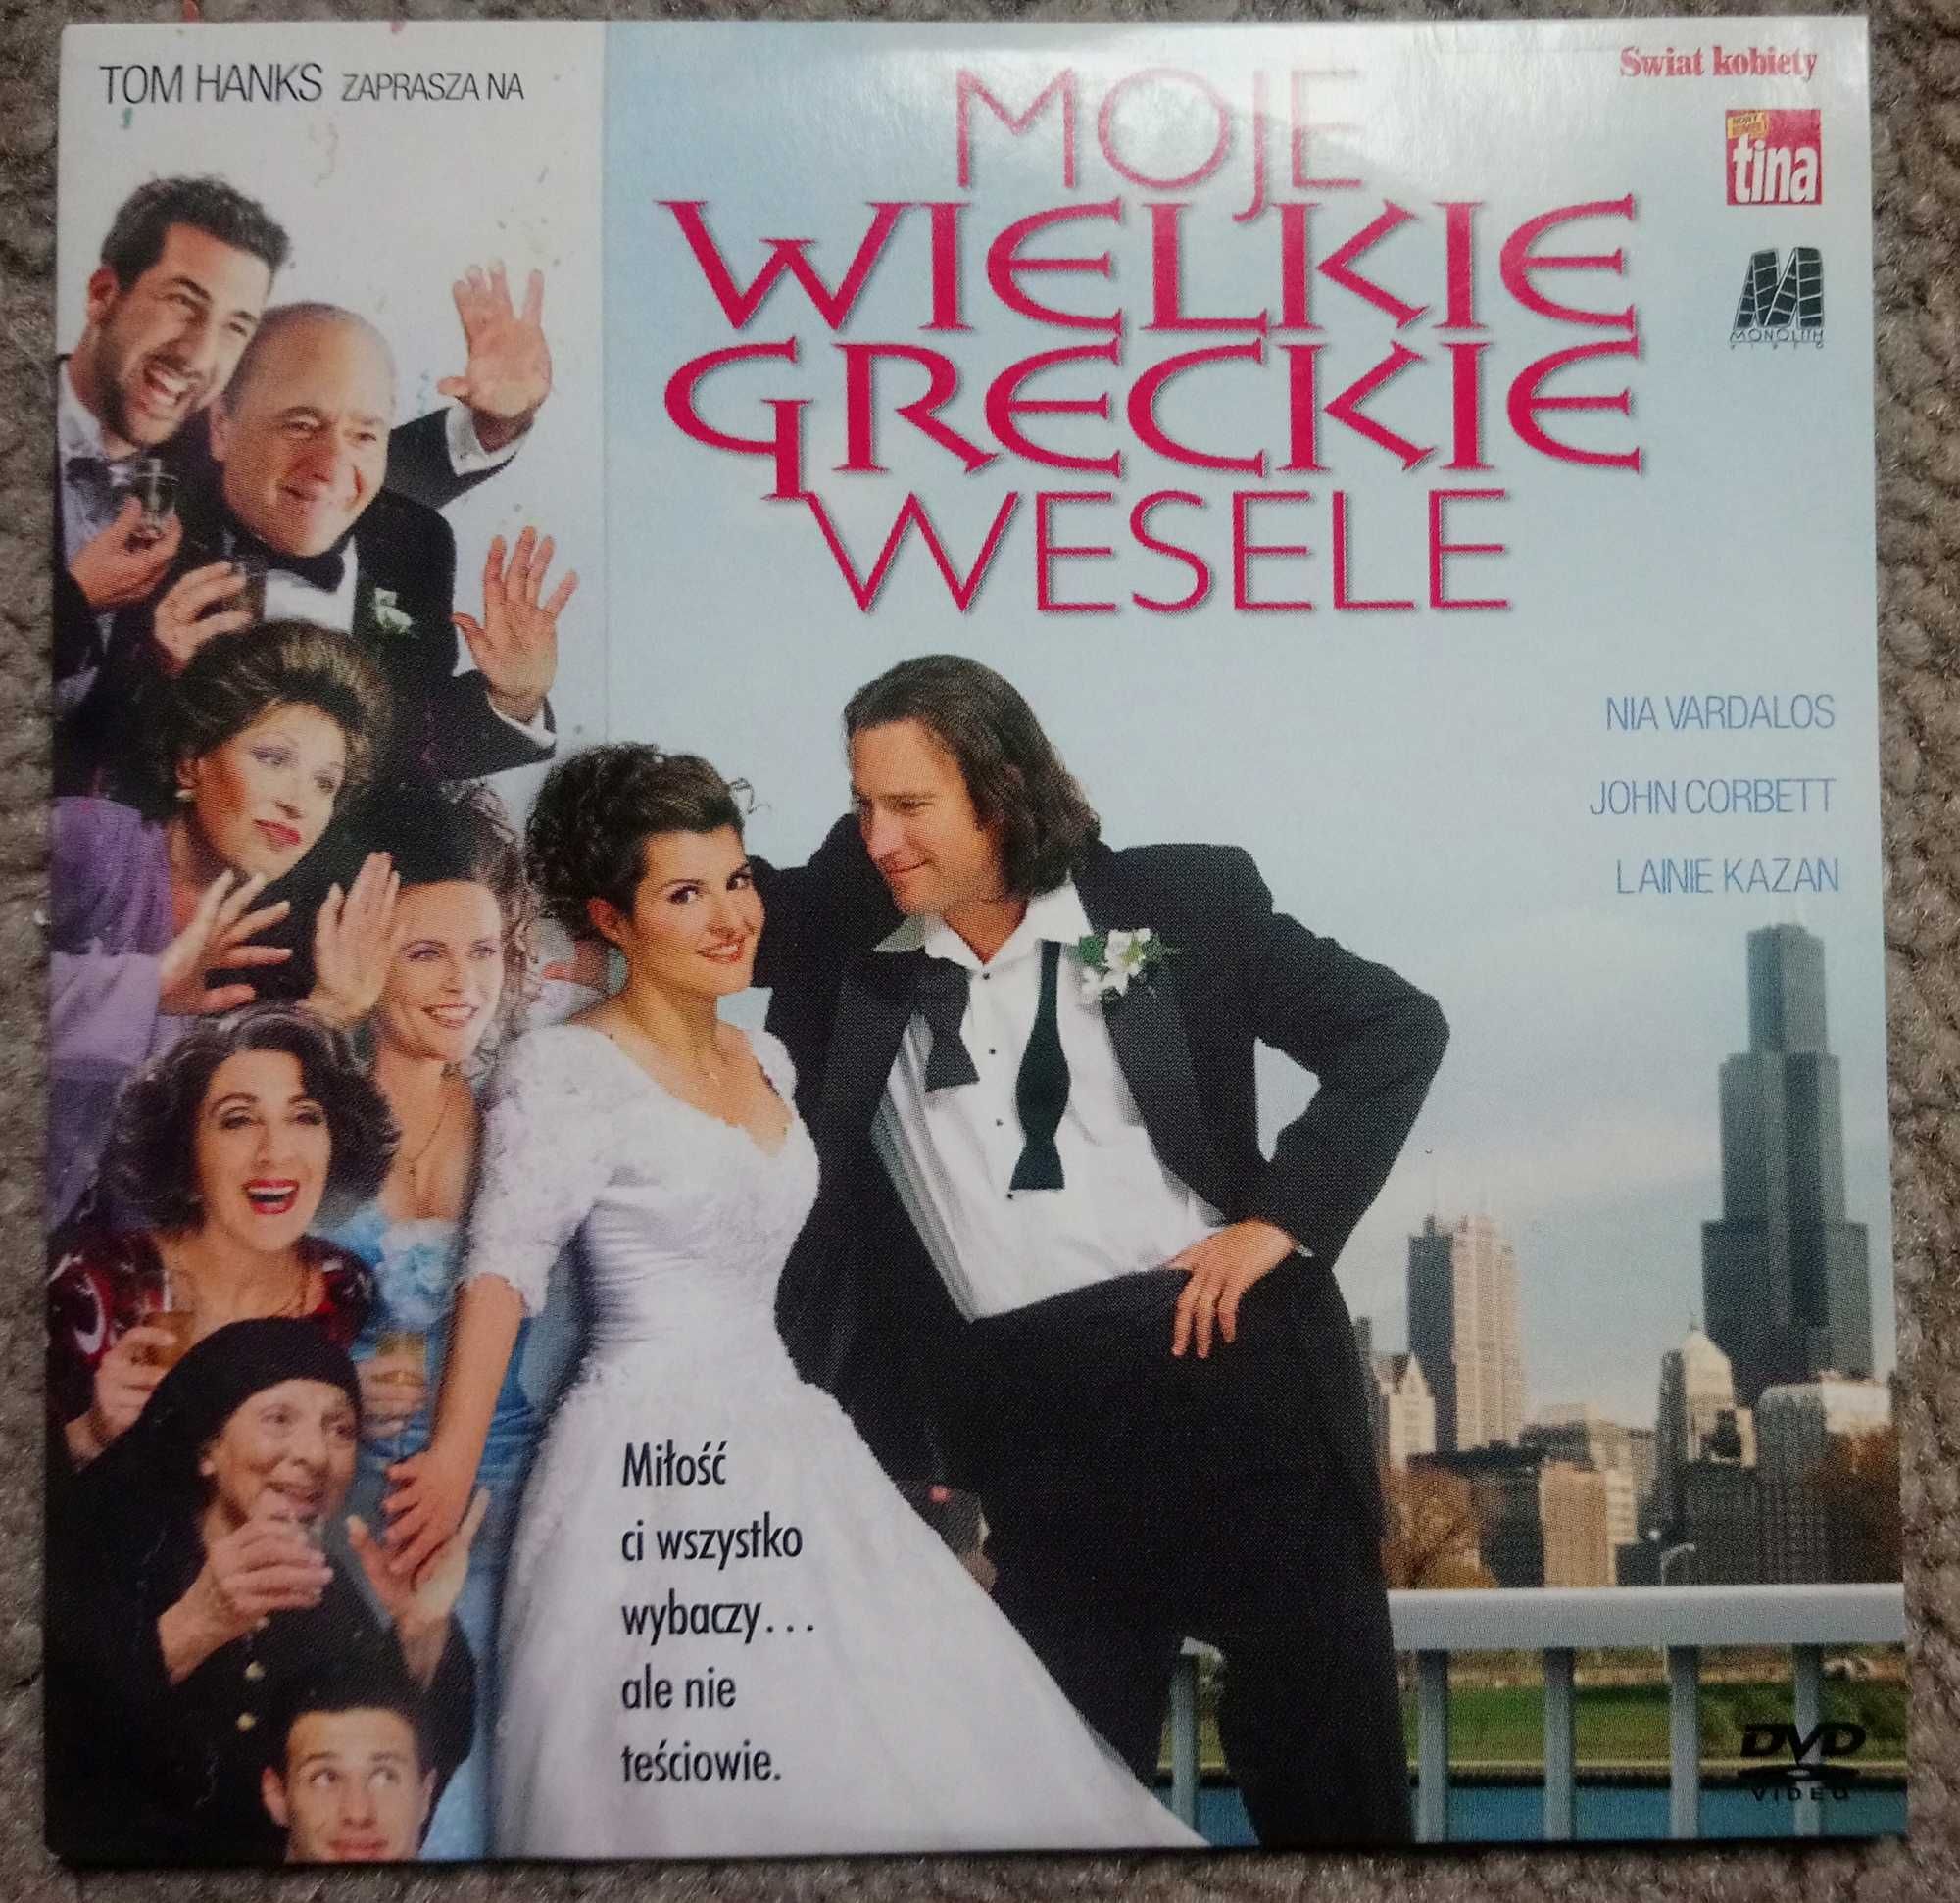 Moje wielkie greckie wesele film na DVD